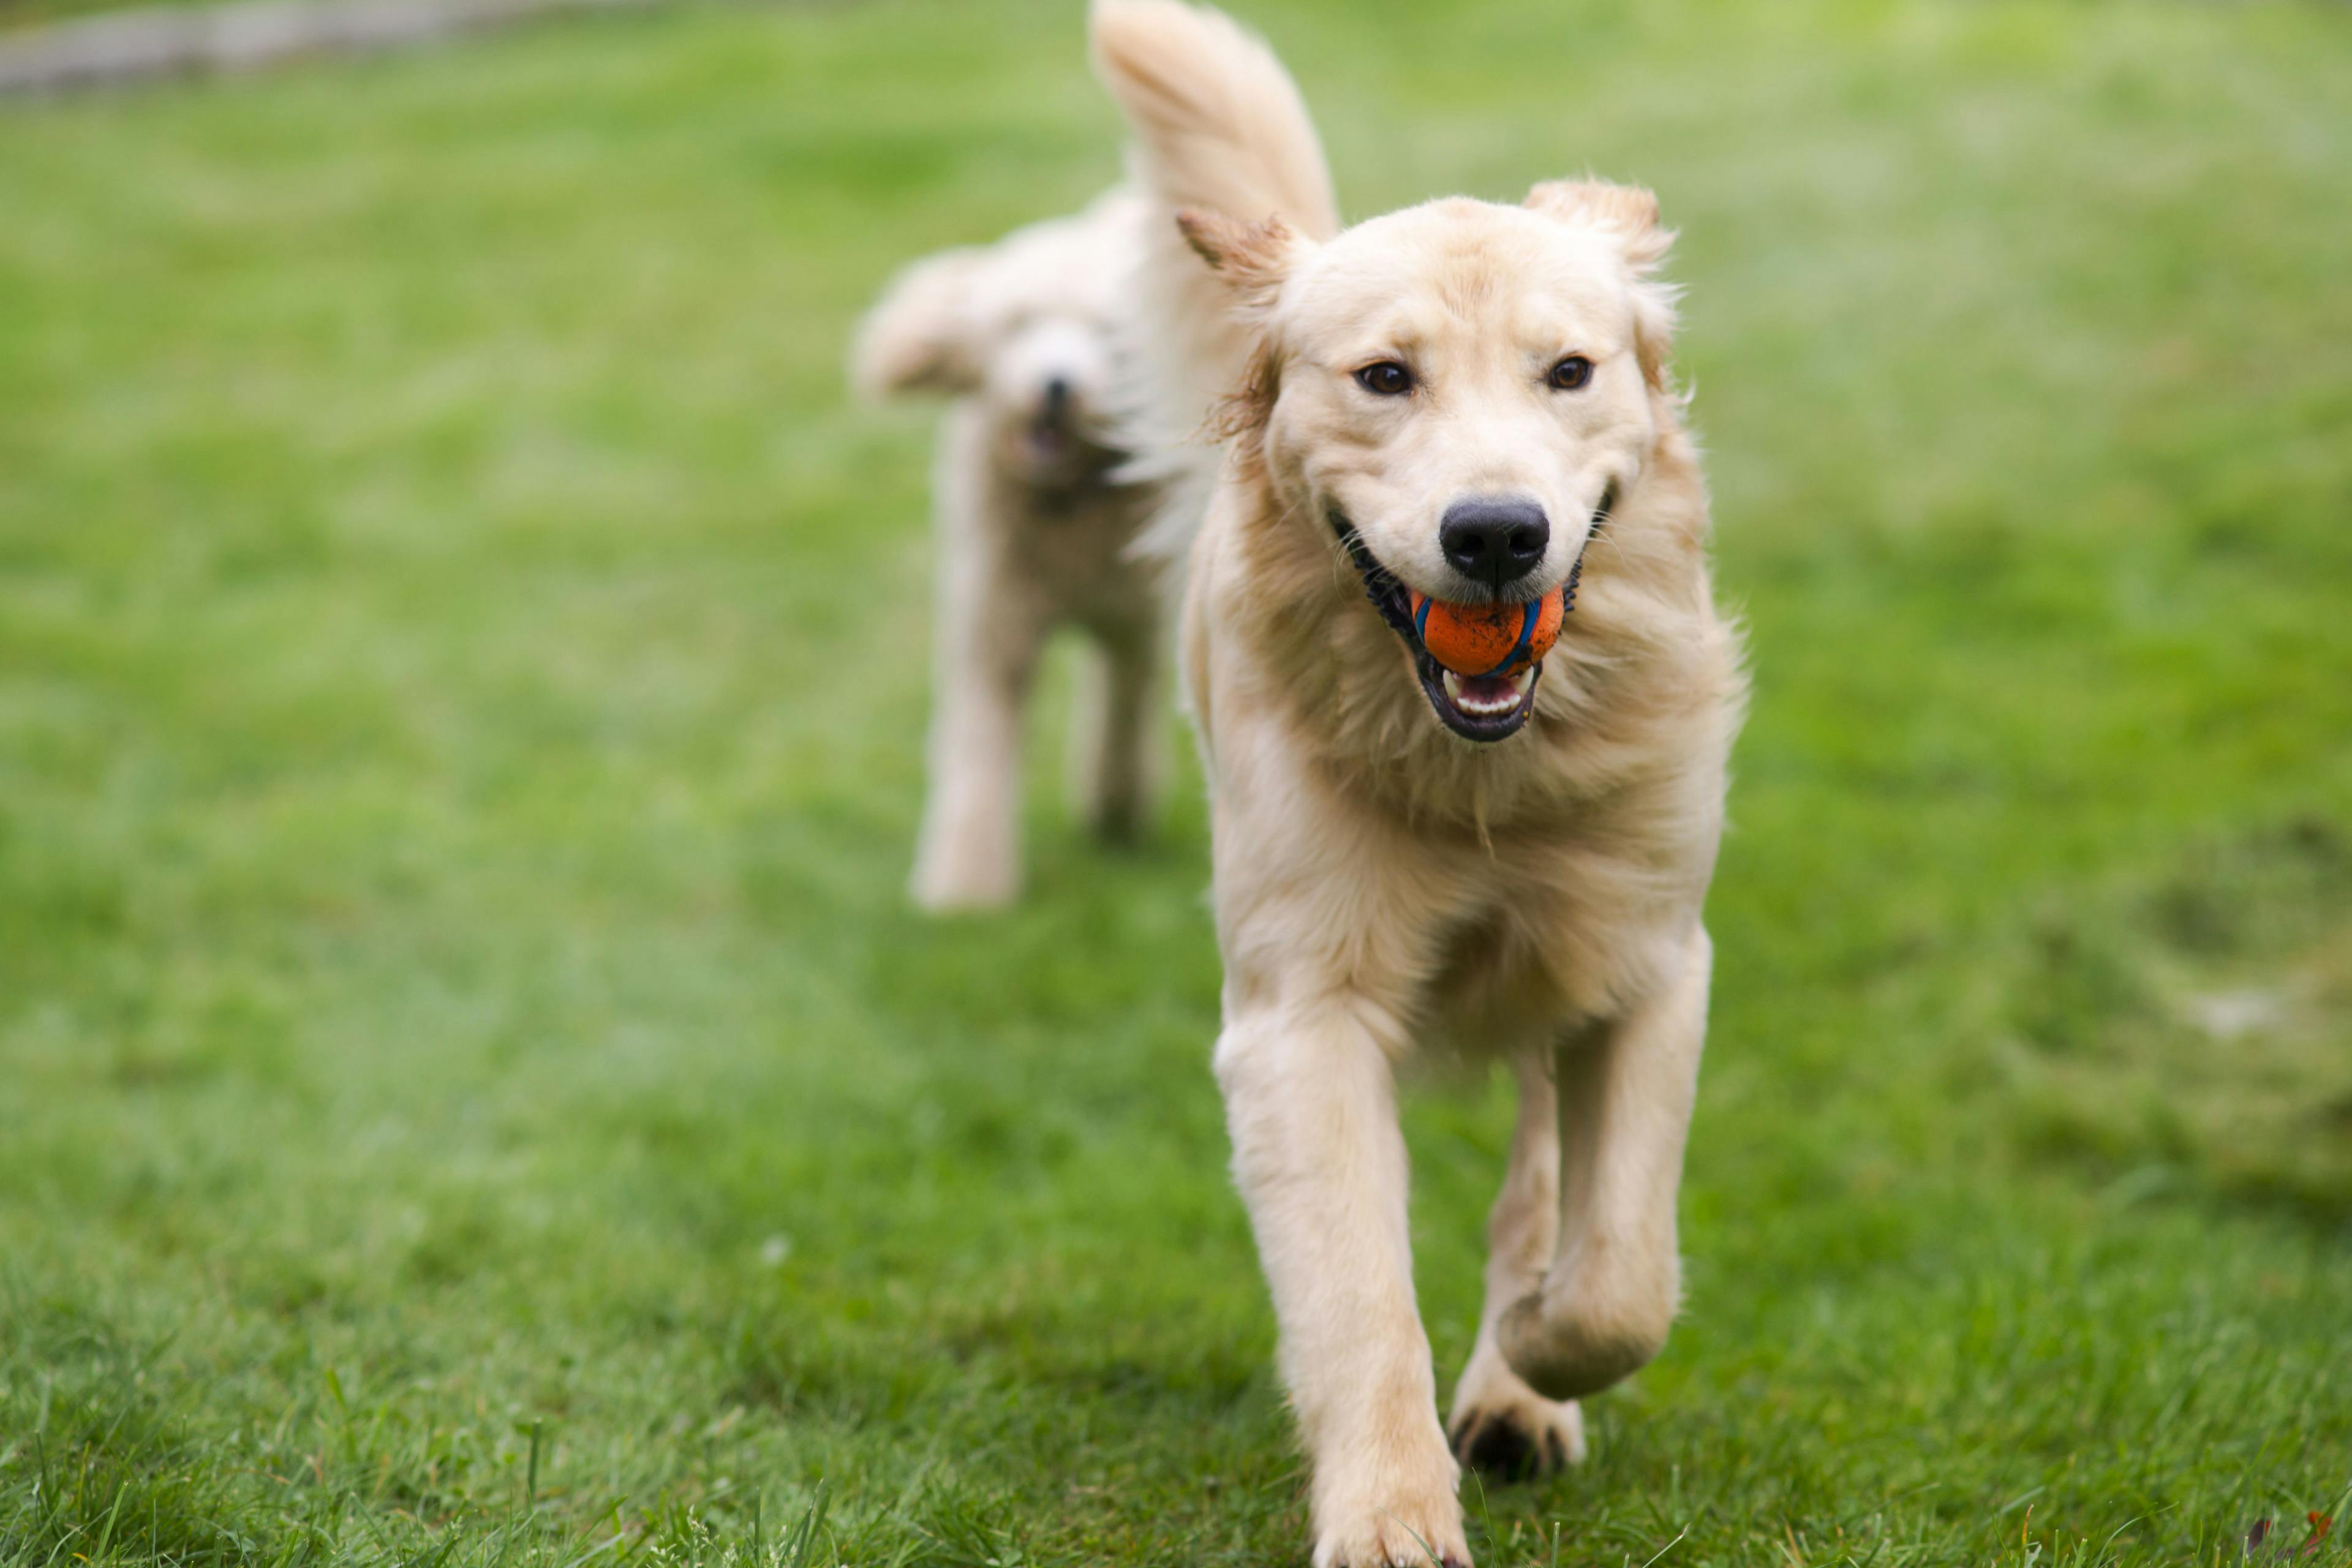 golden retriever dog running in field with a tennis ball